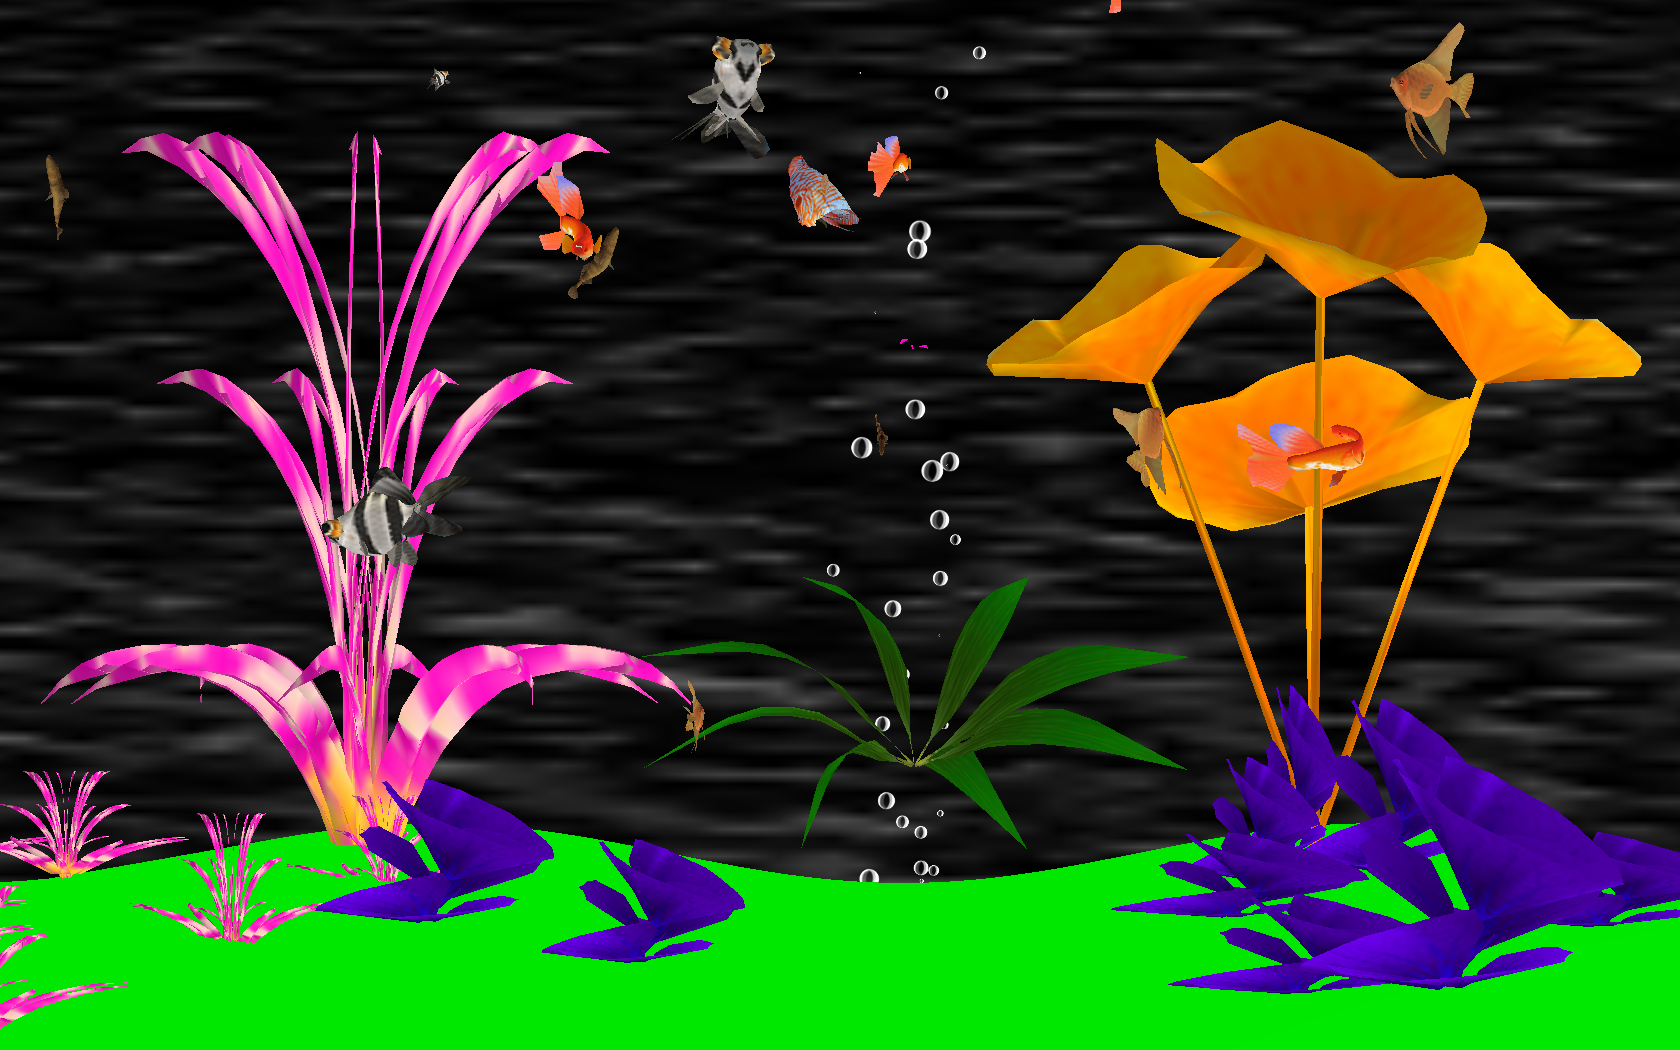 Digital aquarium screensaver featuring realistic CGI animals.